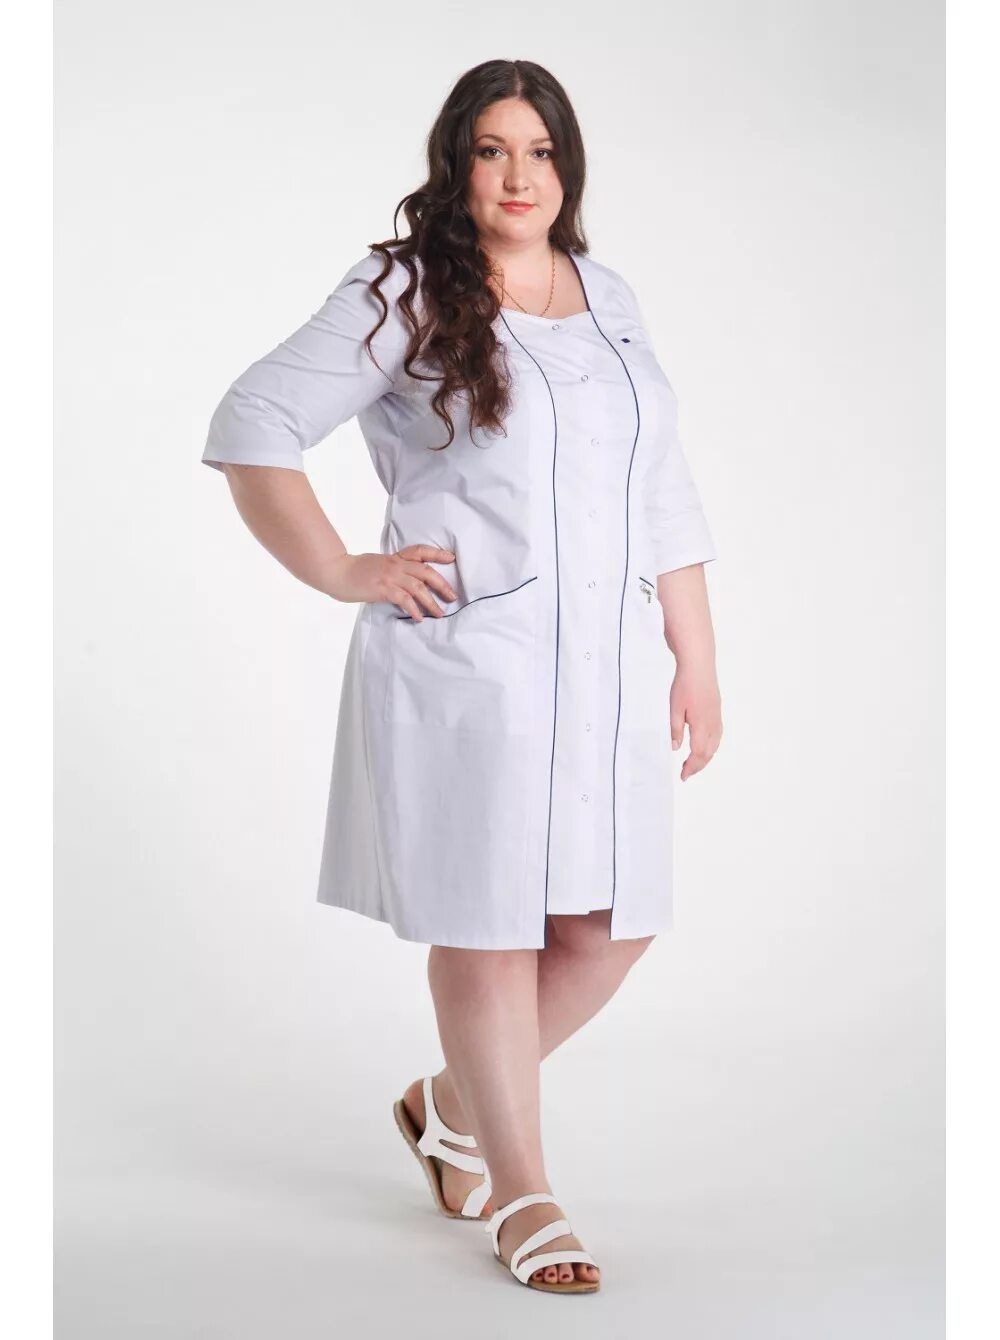 Халаты недорого большого размера. Женский медицинский топ Cherokee ww610. Медстиль медицинская одежда халат модель м-329. Халат медицинский женский больших размеров. Медицинские халаты для полных женщин.